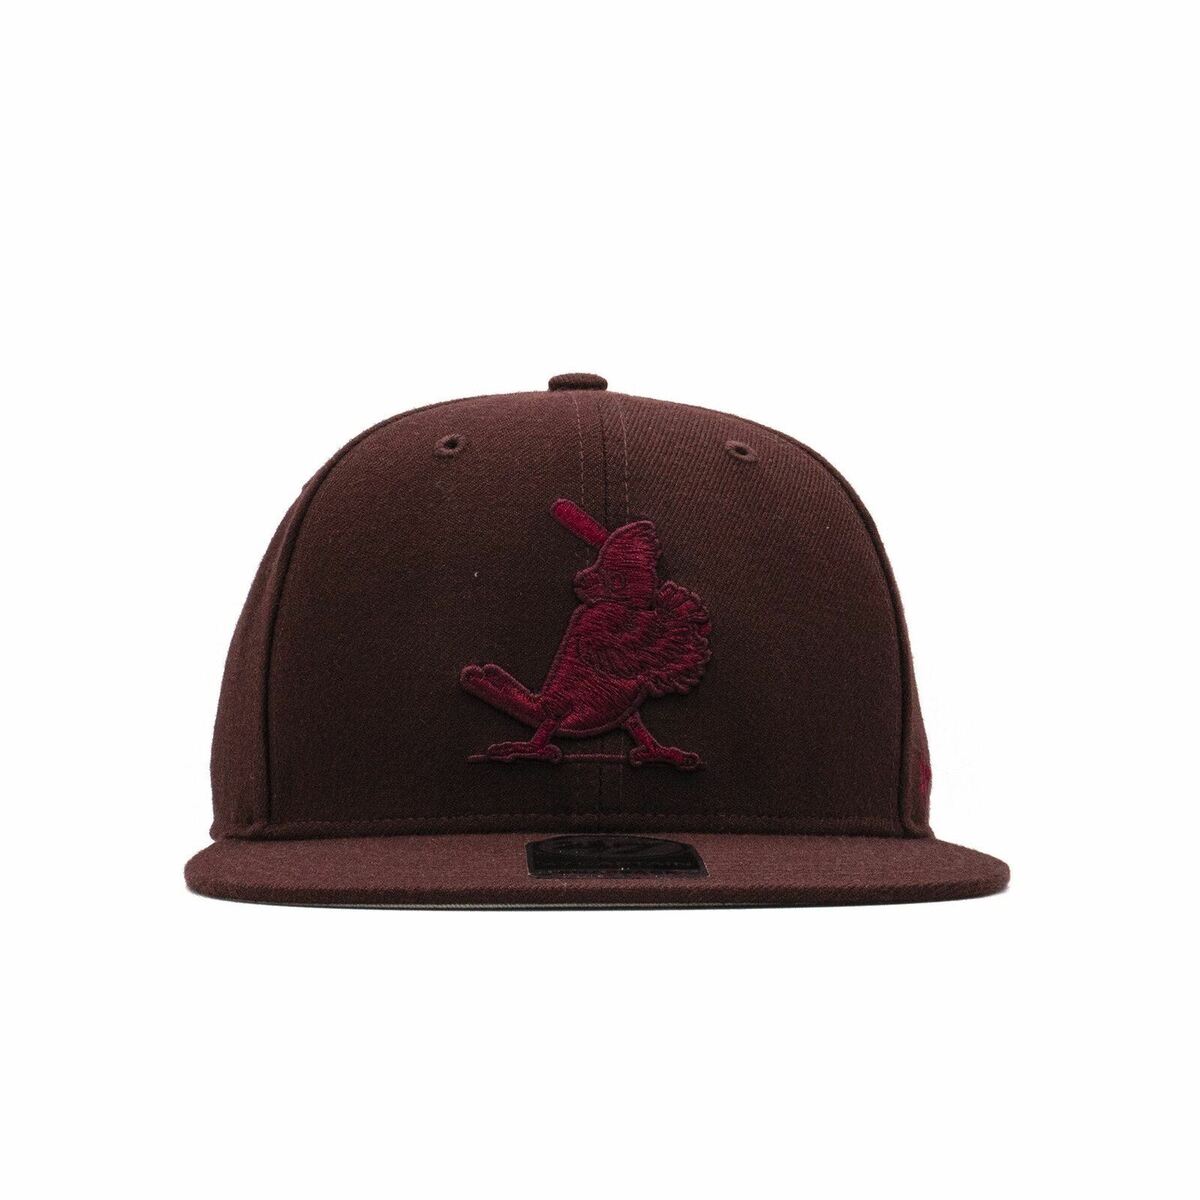 St. Louis Cardinals Men’s 47 Brand Captain Snapback Hat